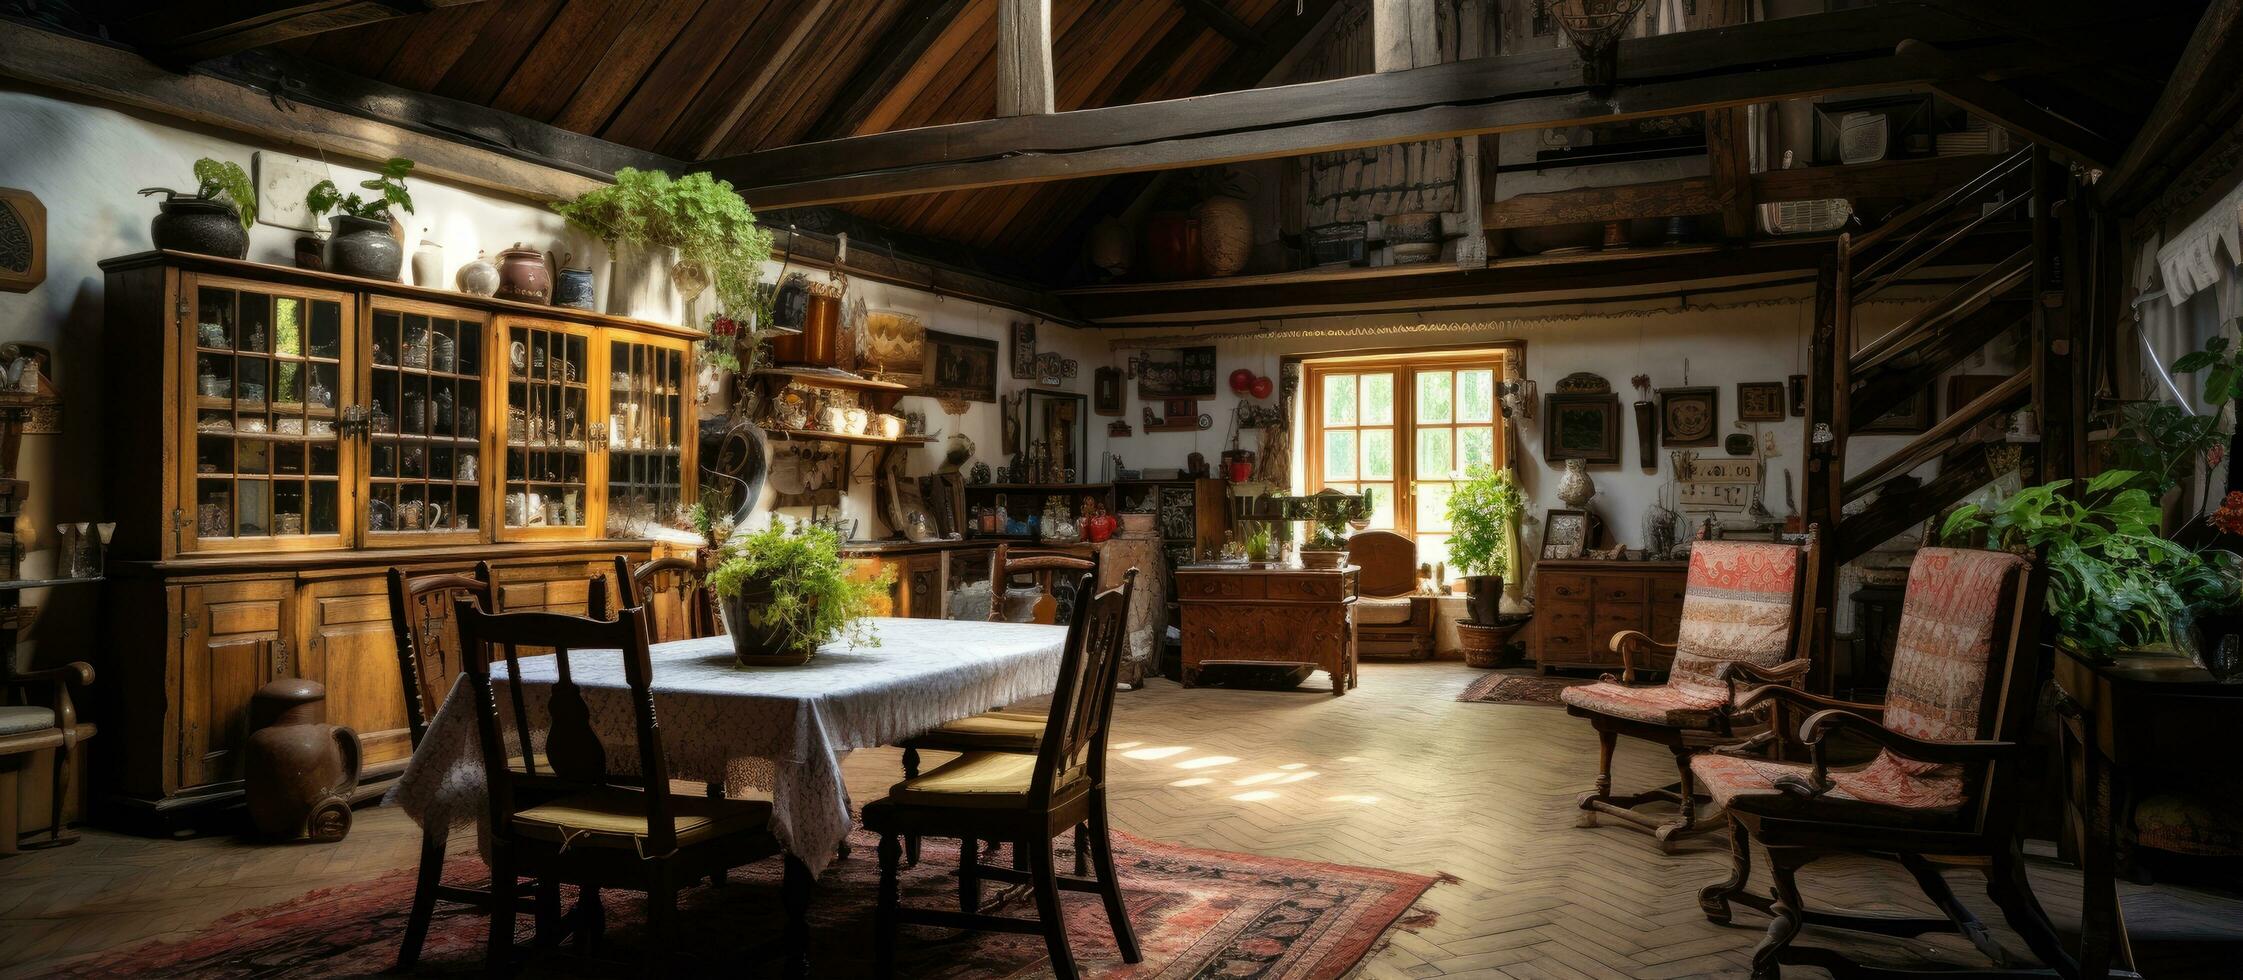 traditioneel Russisch landgoed interieur van een oud boerderij foto